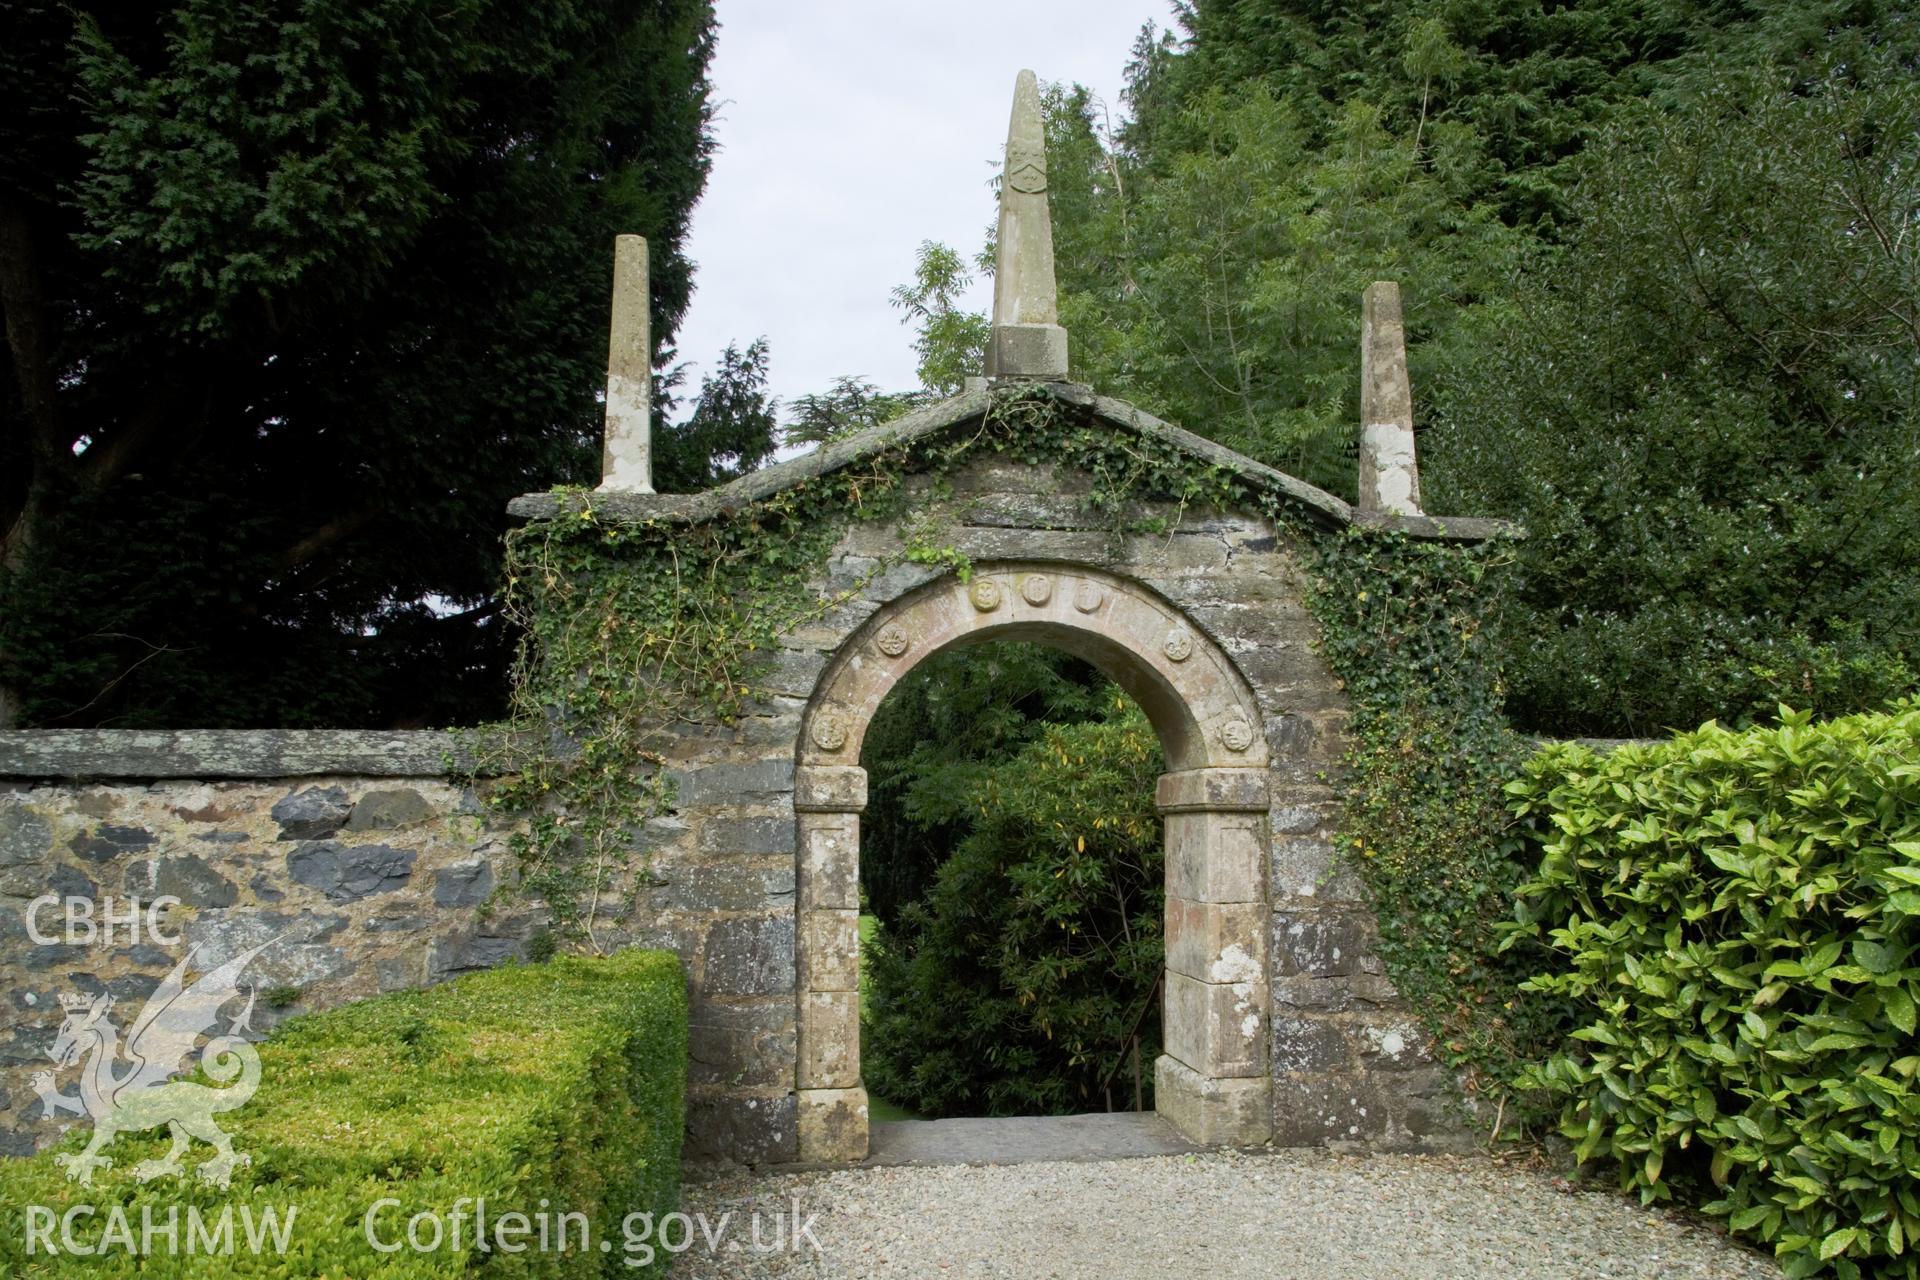 Elizabethan archway in garden.